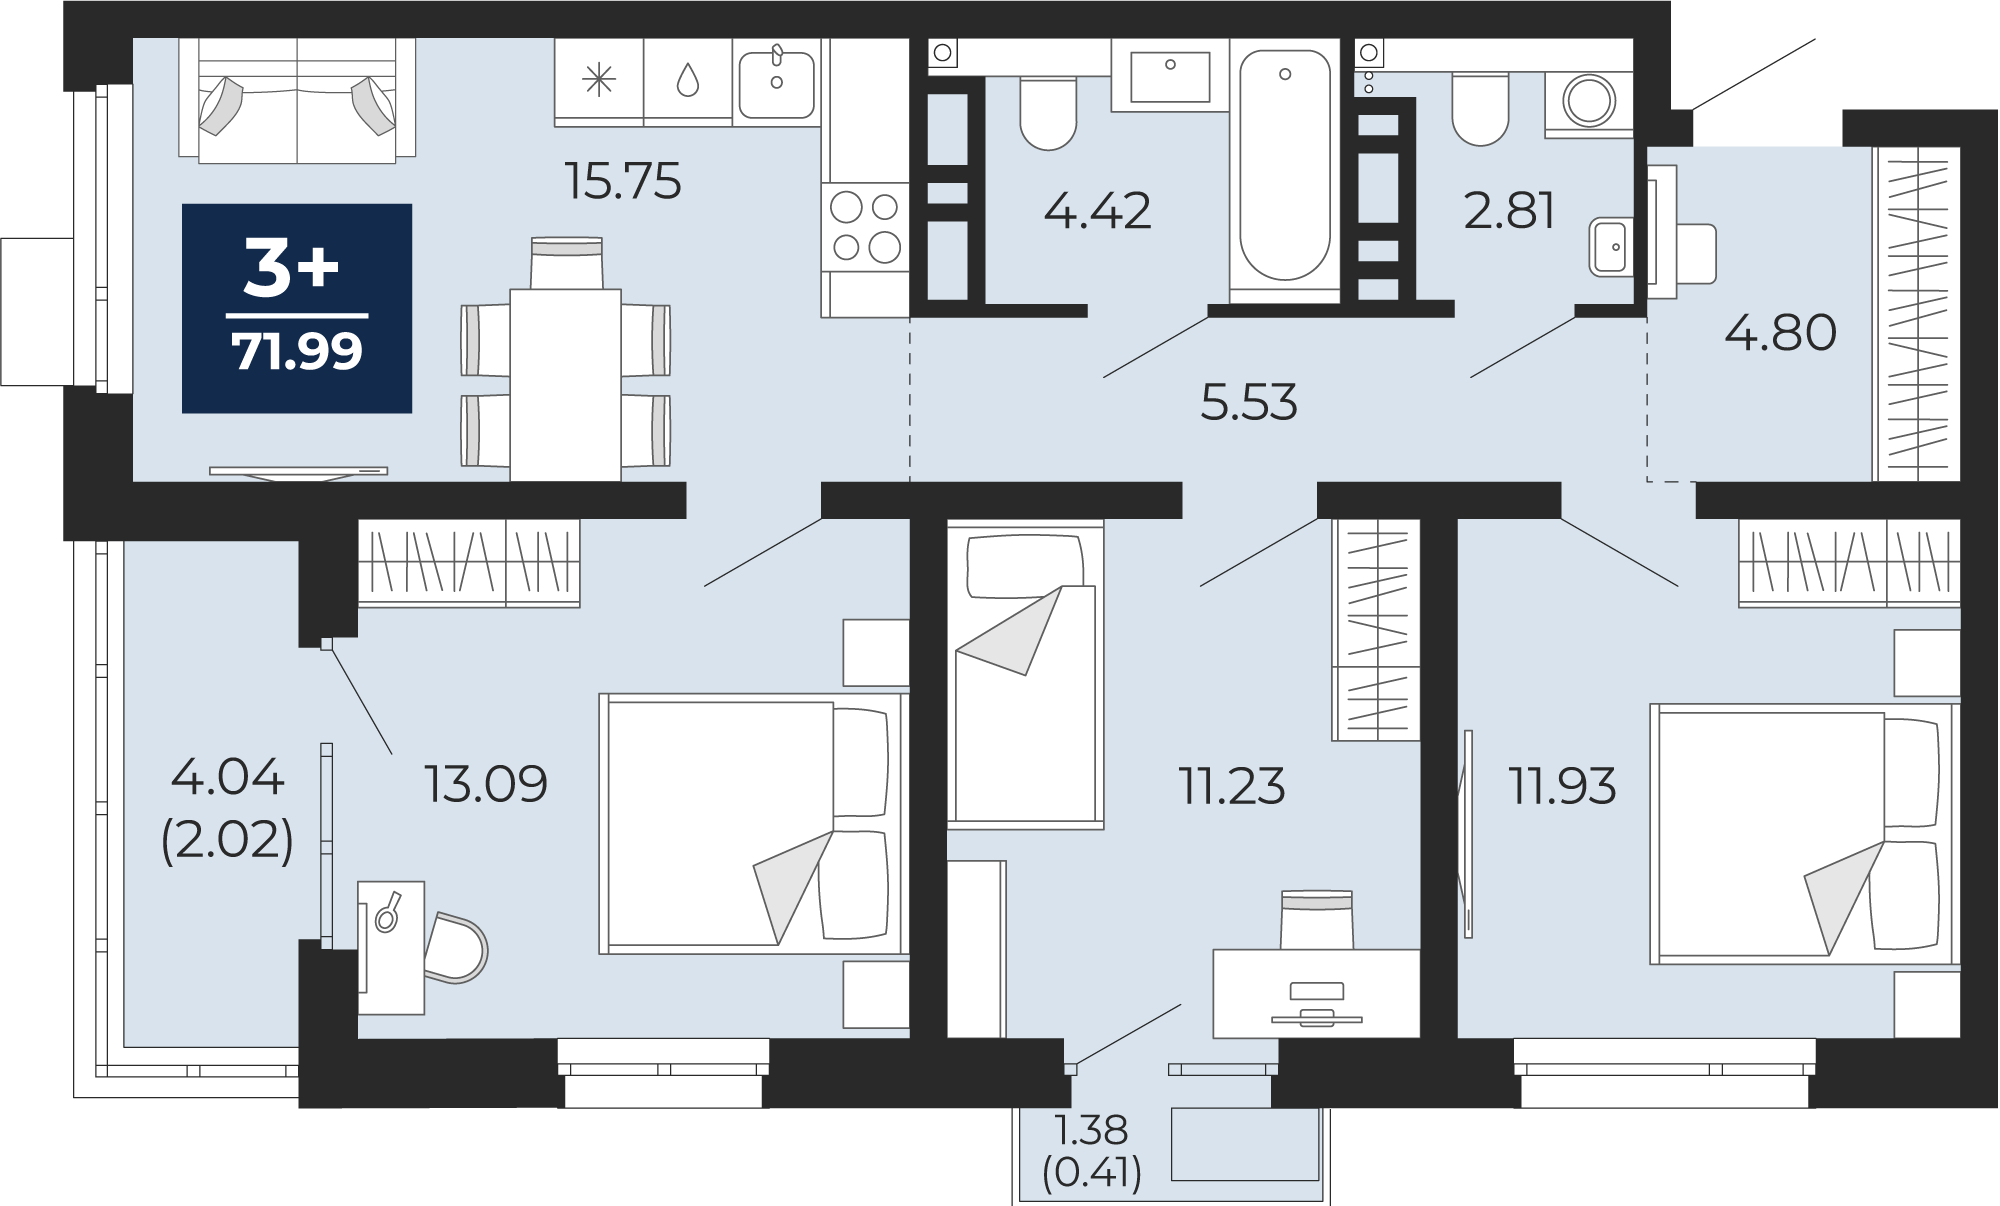 Квартира № 380, 3-комнатная, 71.99 кв. м, 10 этаж